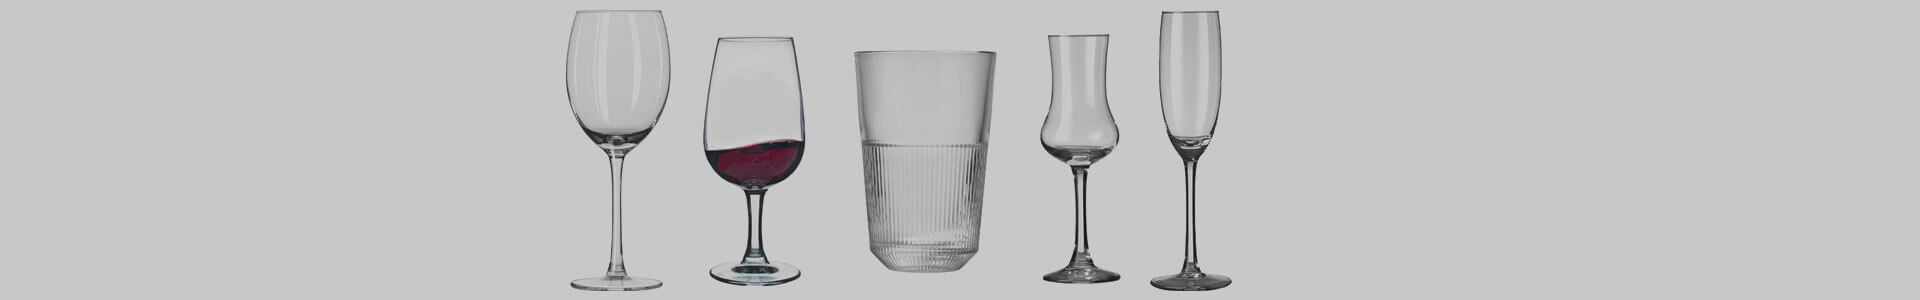 Verschiedene Gläser des Herstellers Royal Leerdam stehen nebeneinander.